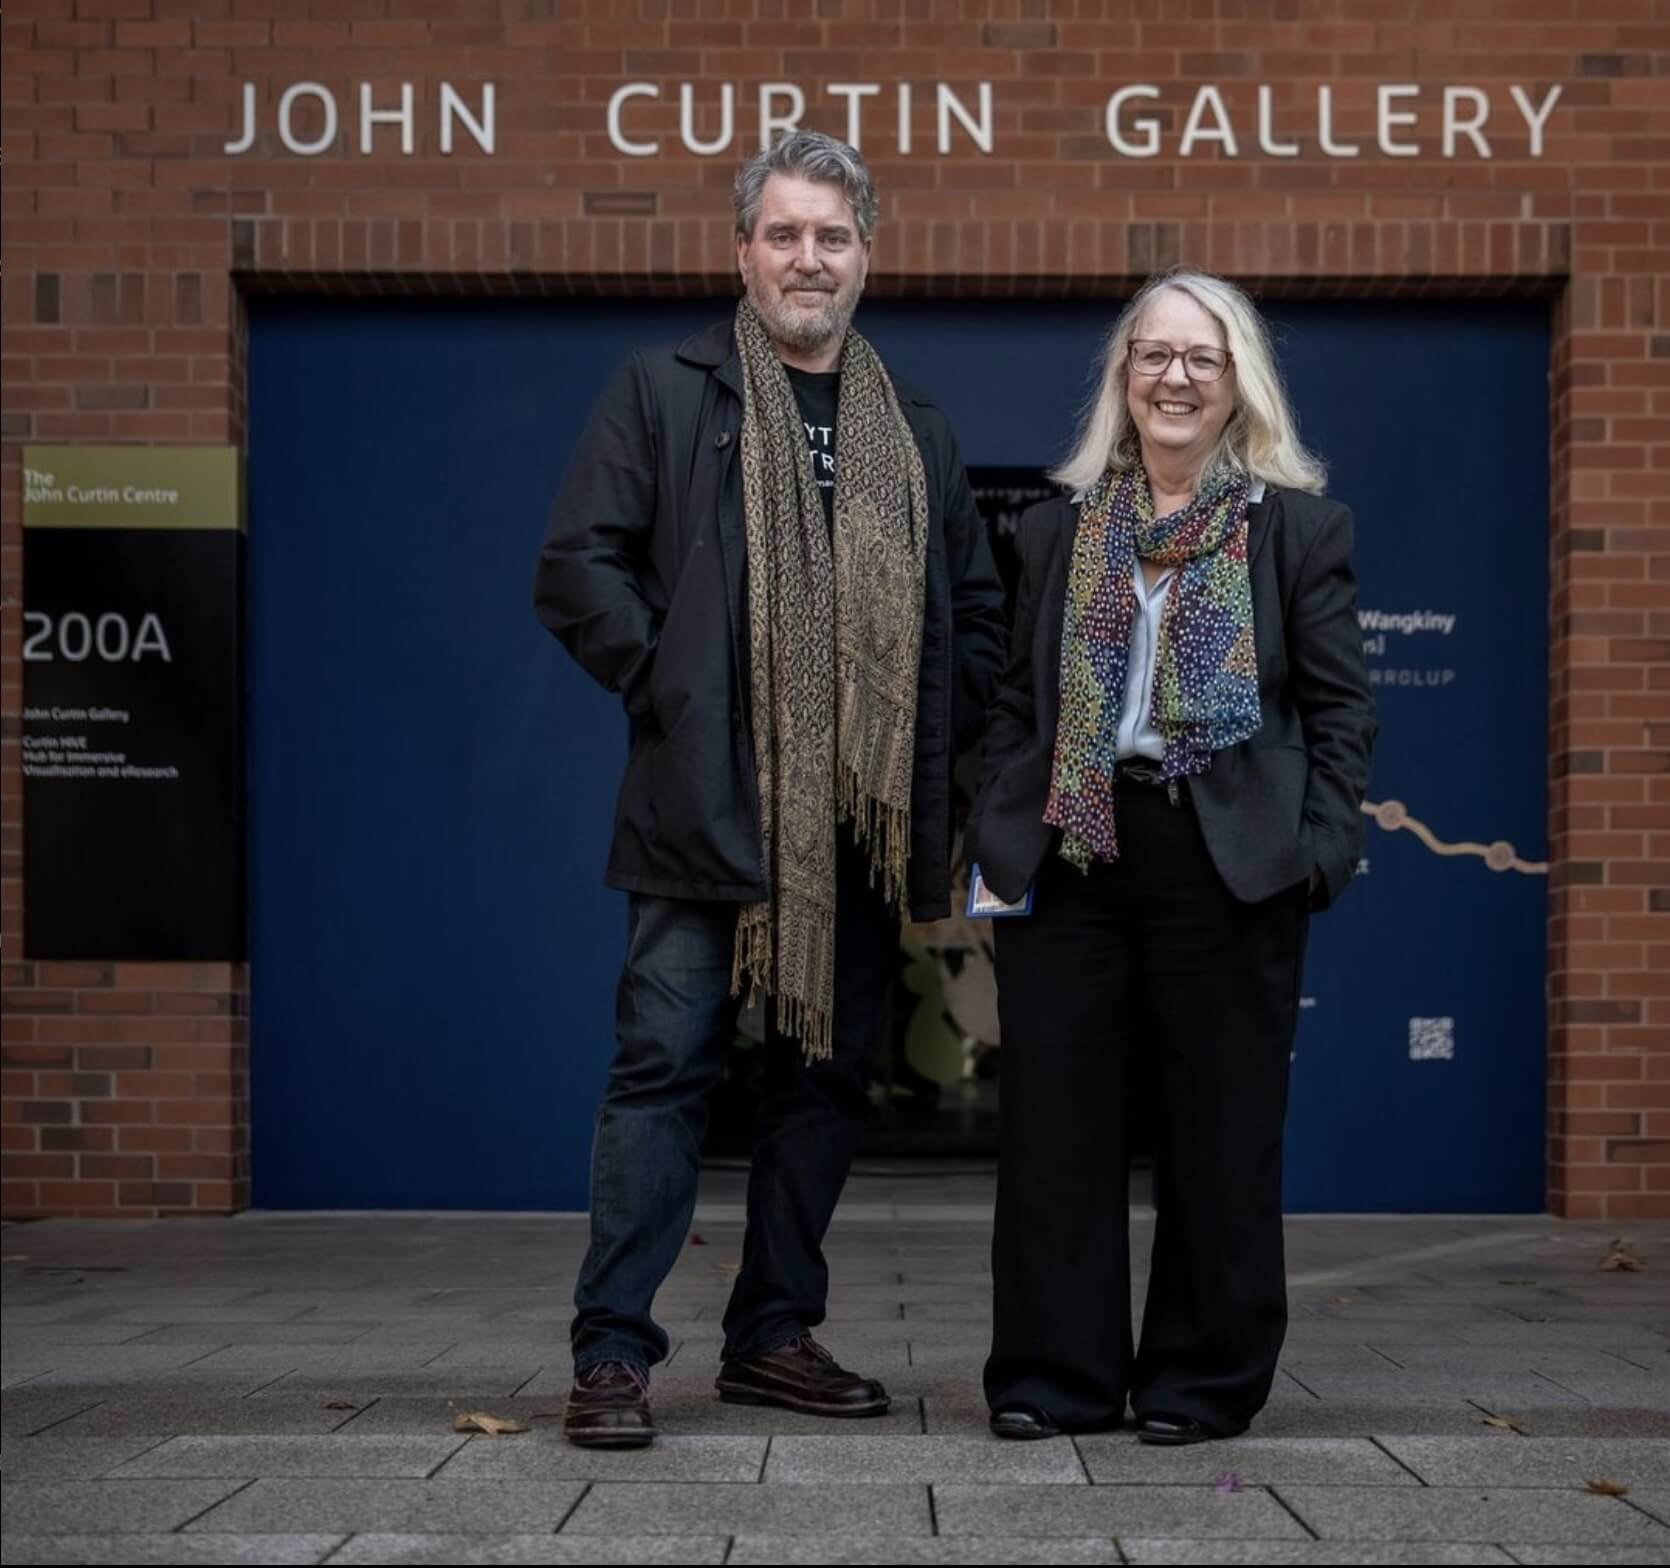 John Curtin Gallery